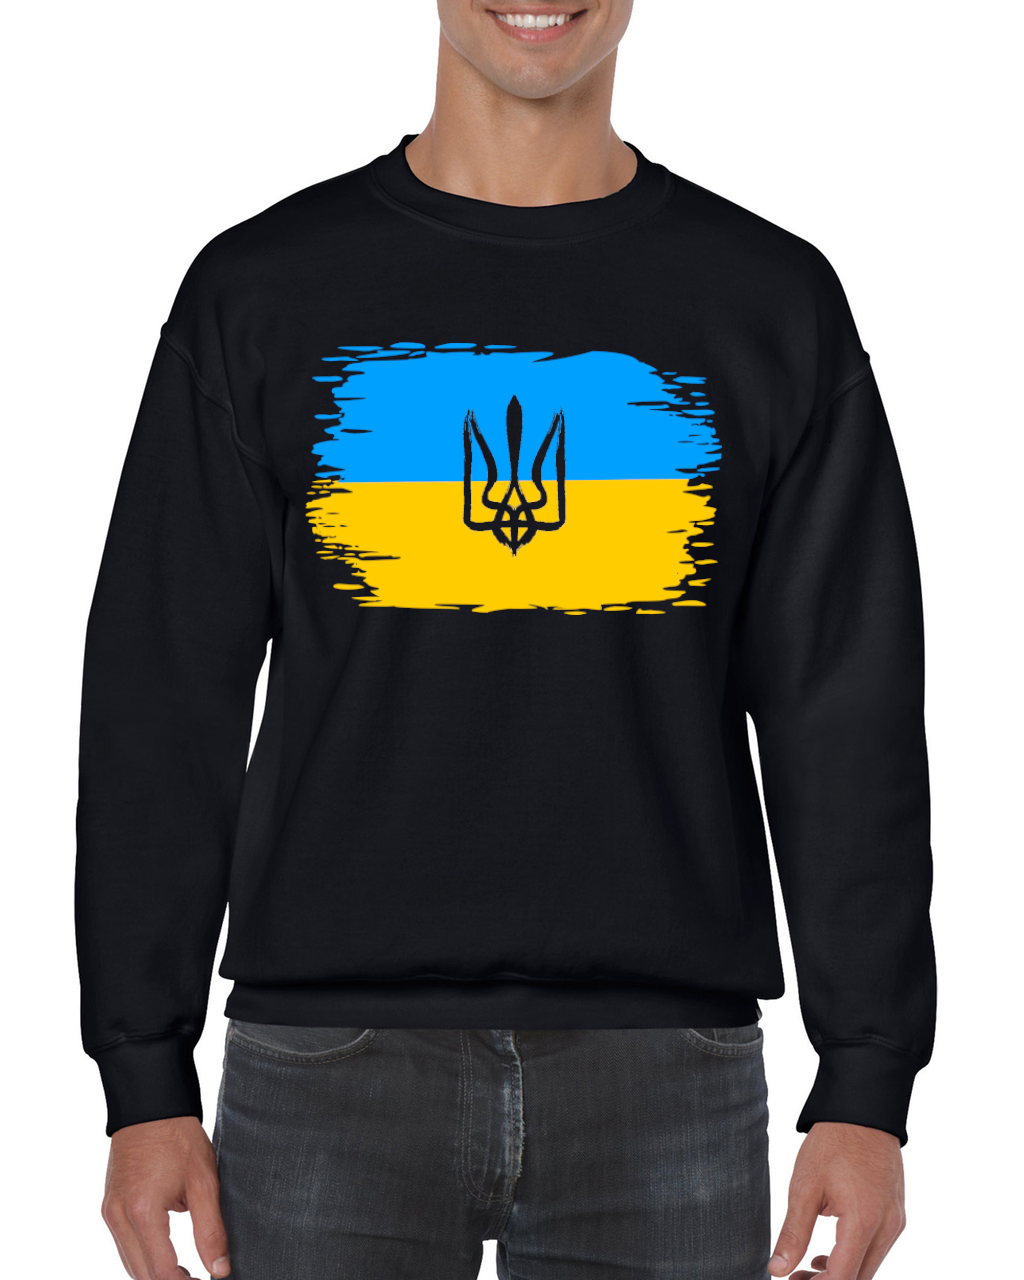 Adult unisex sweatshirt "Ukrainian Flag"